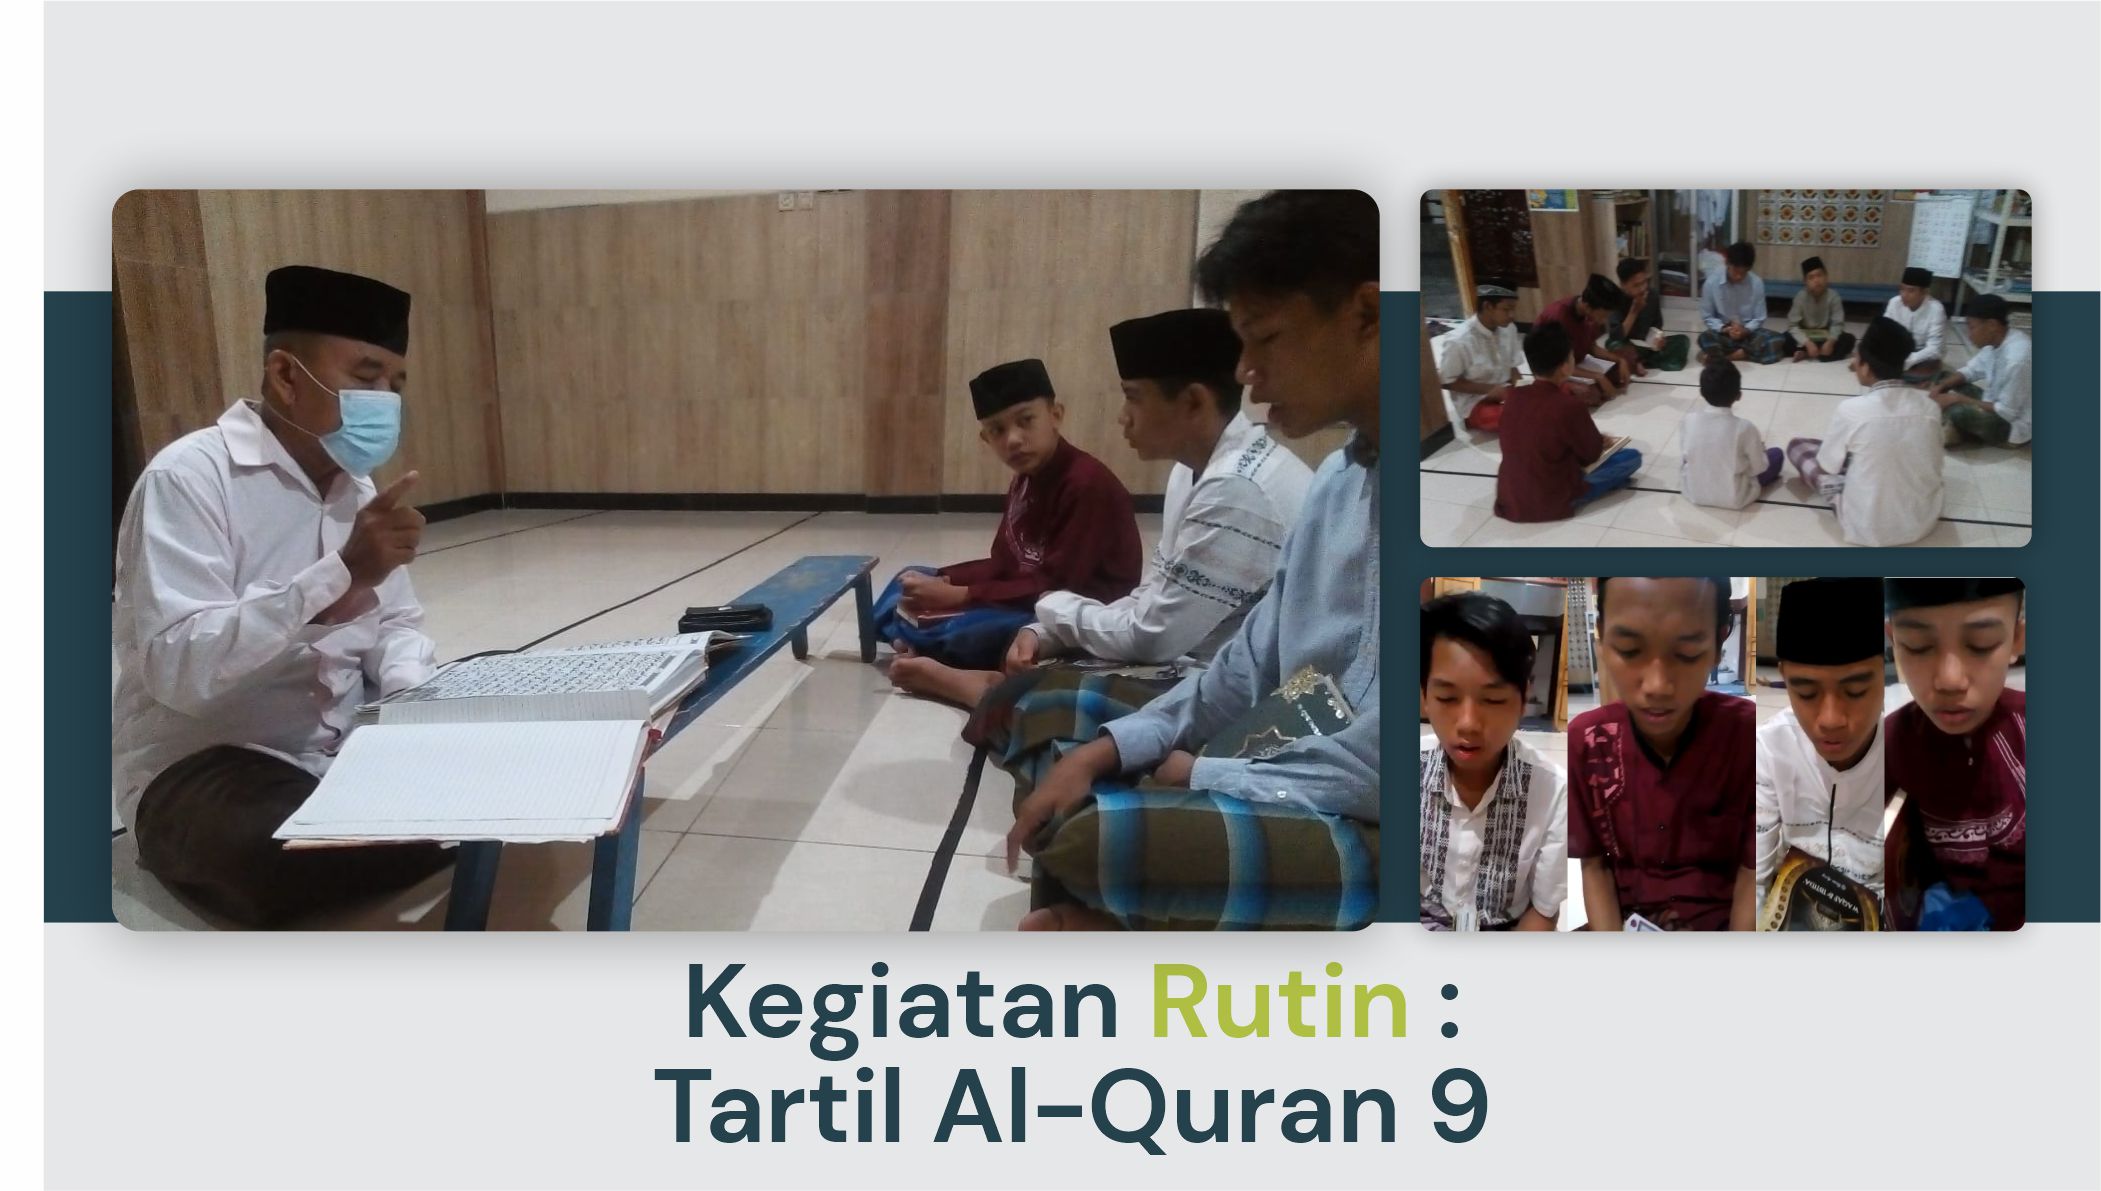 Kegiatan Rutin : Tartil Al-Quran 9